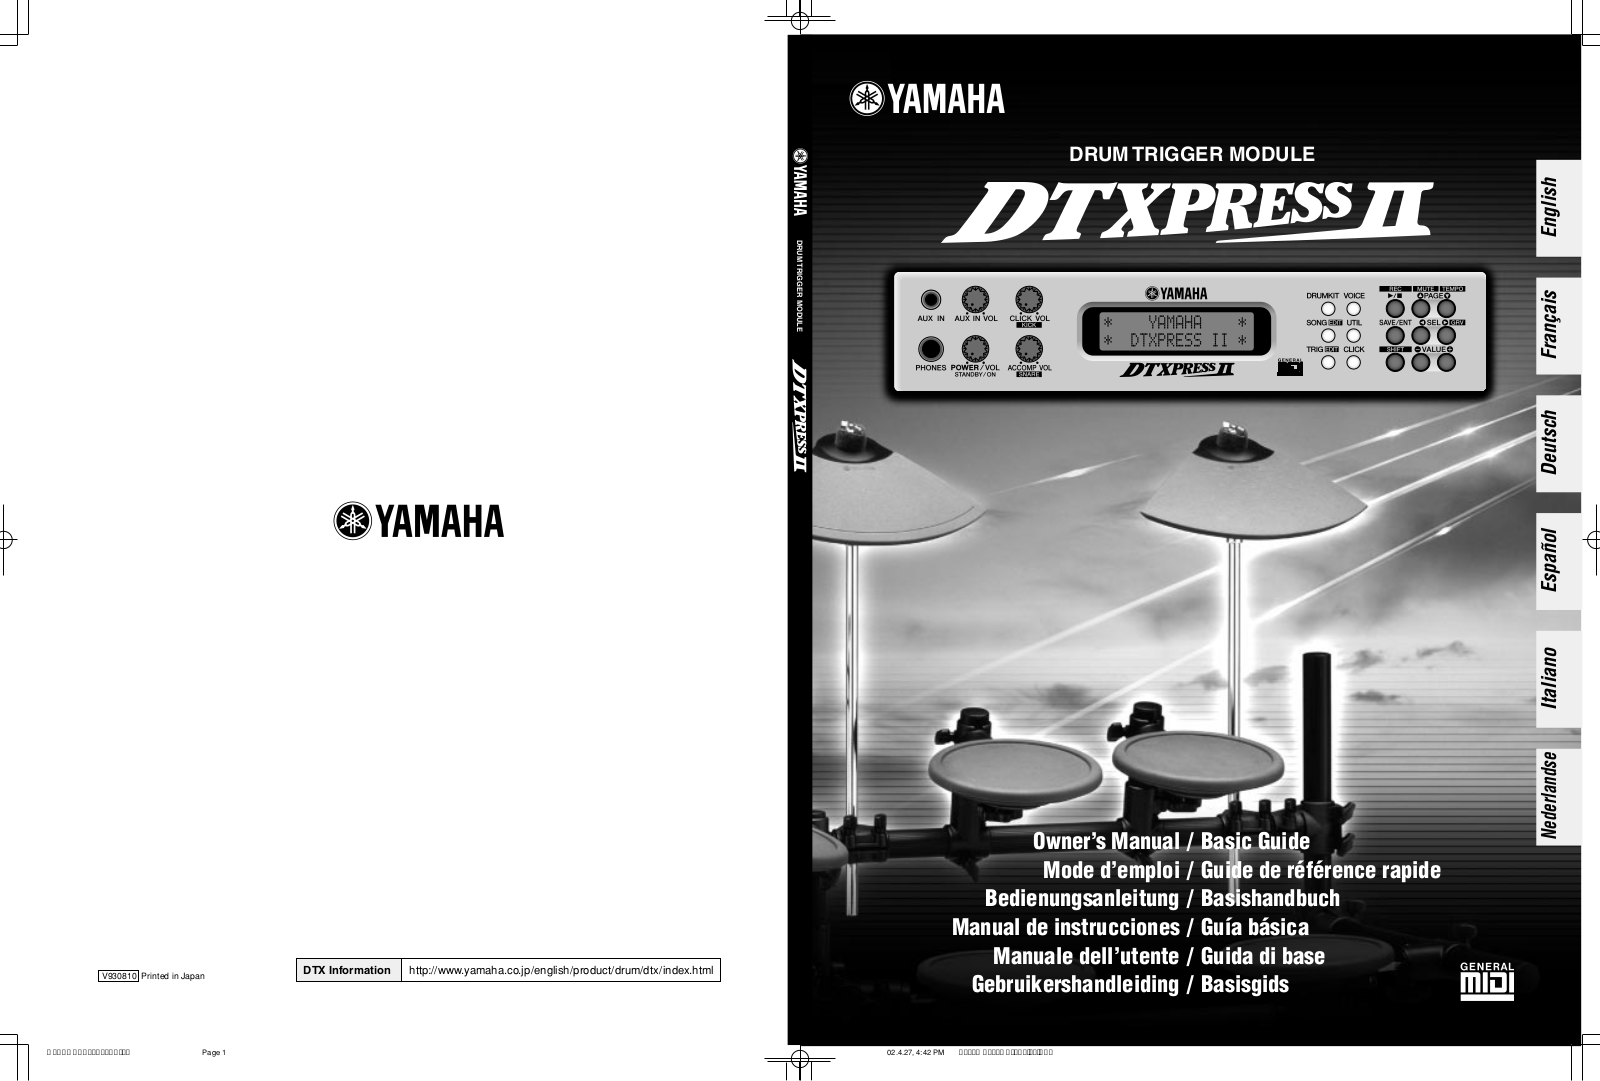 Yamaha DTXPRESS II User Manual